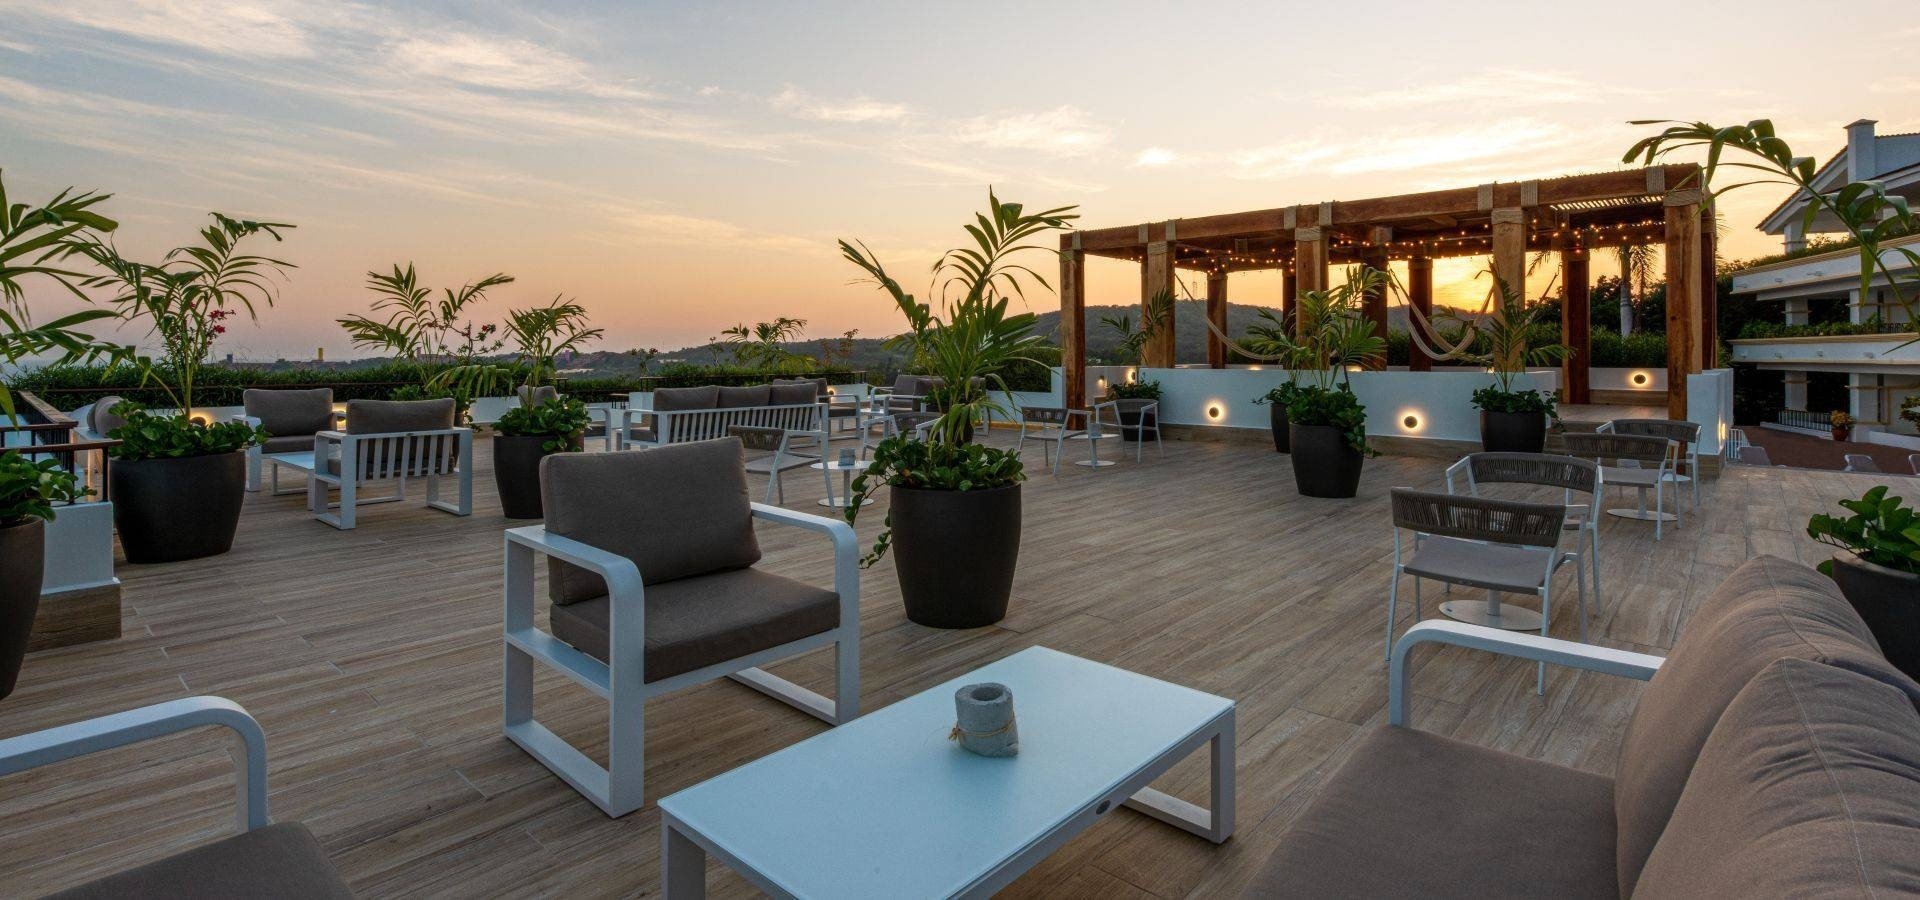 Terraza decorada con sillas, mesas y macetas del Hotel Park Royal Beach Huatulco